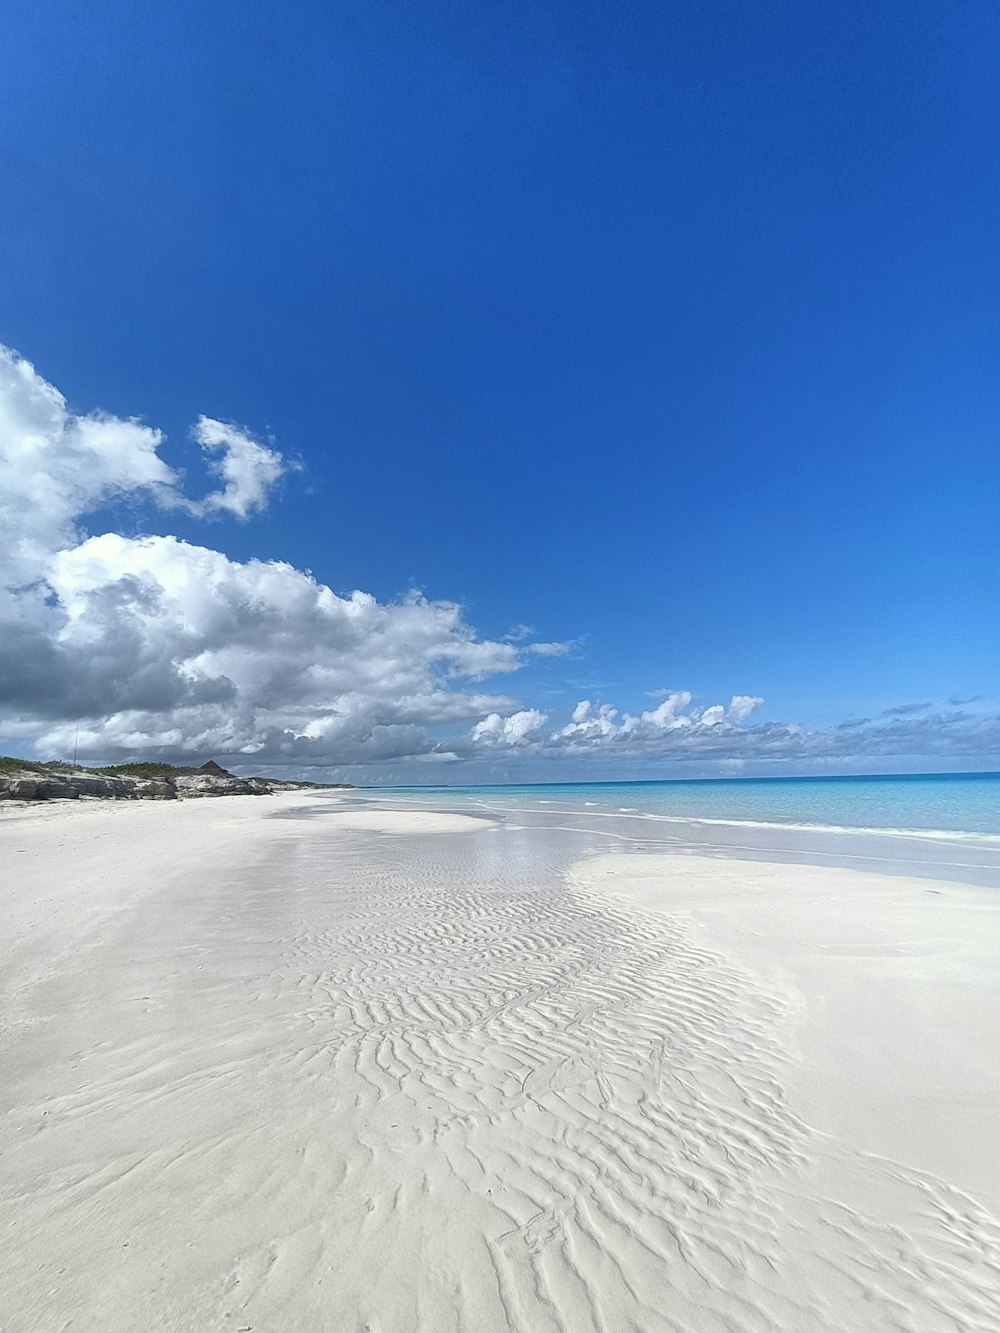 Una playa de arena con un cielo azul y nubes blancas